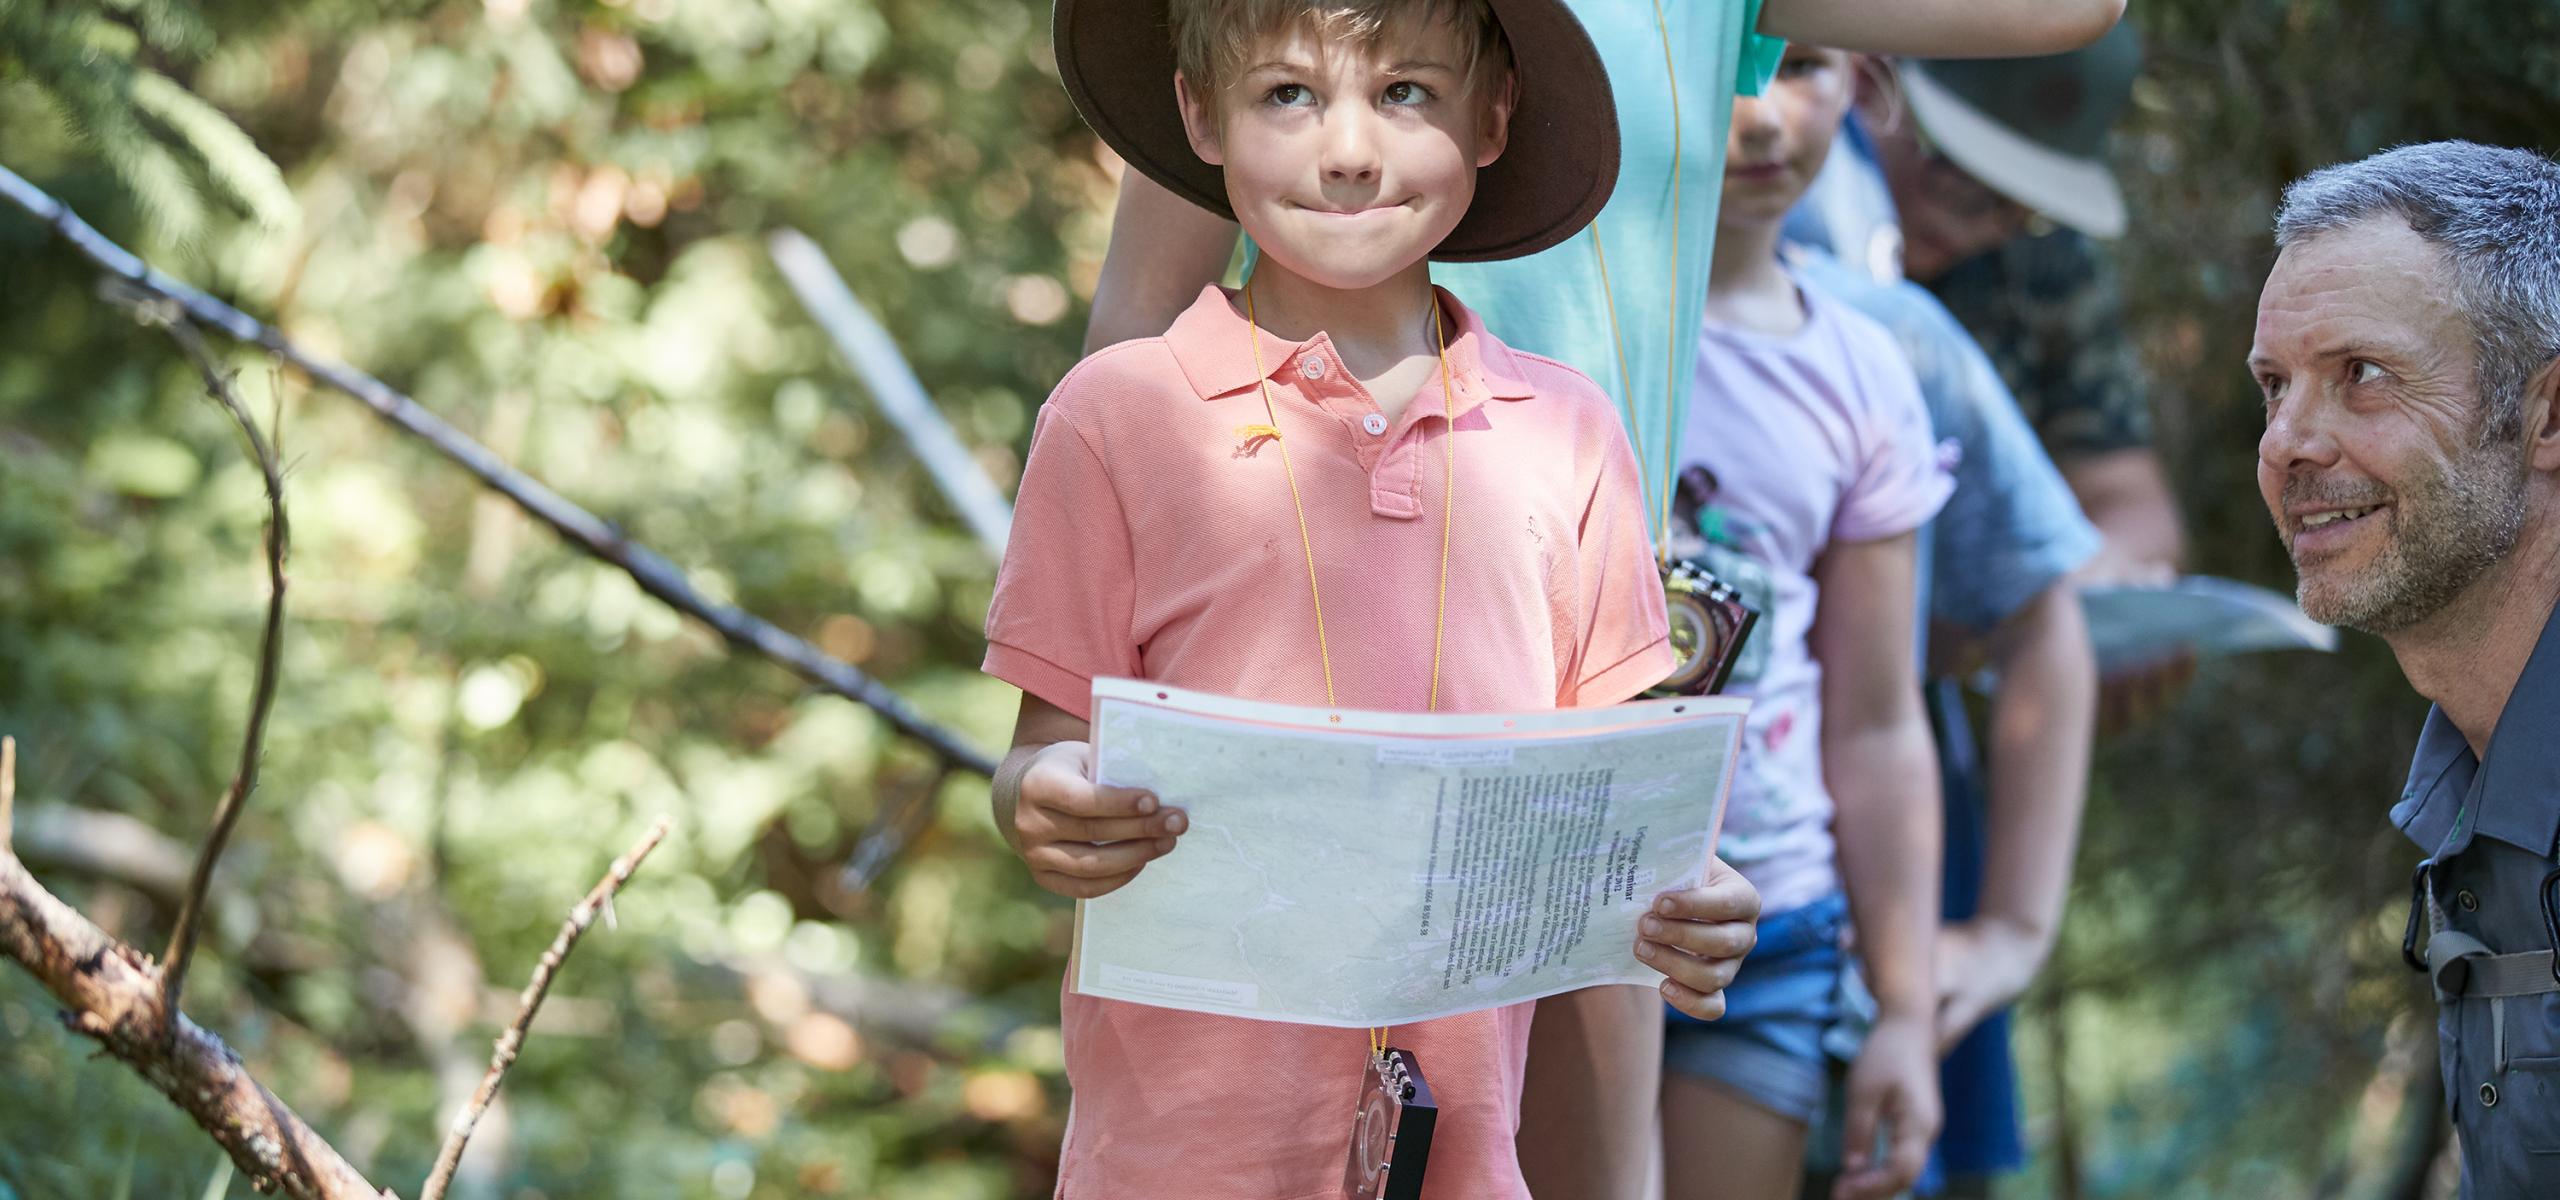 Ein kleiner Junge versucht sich im Wald mit Kompass und Plan zu orientieren